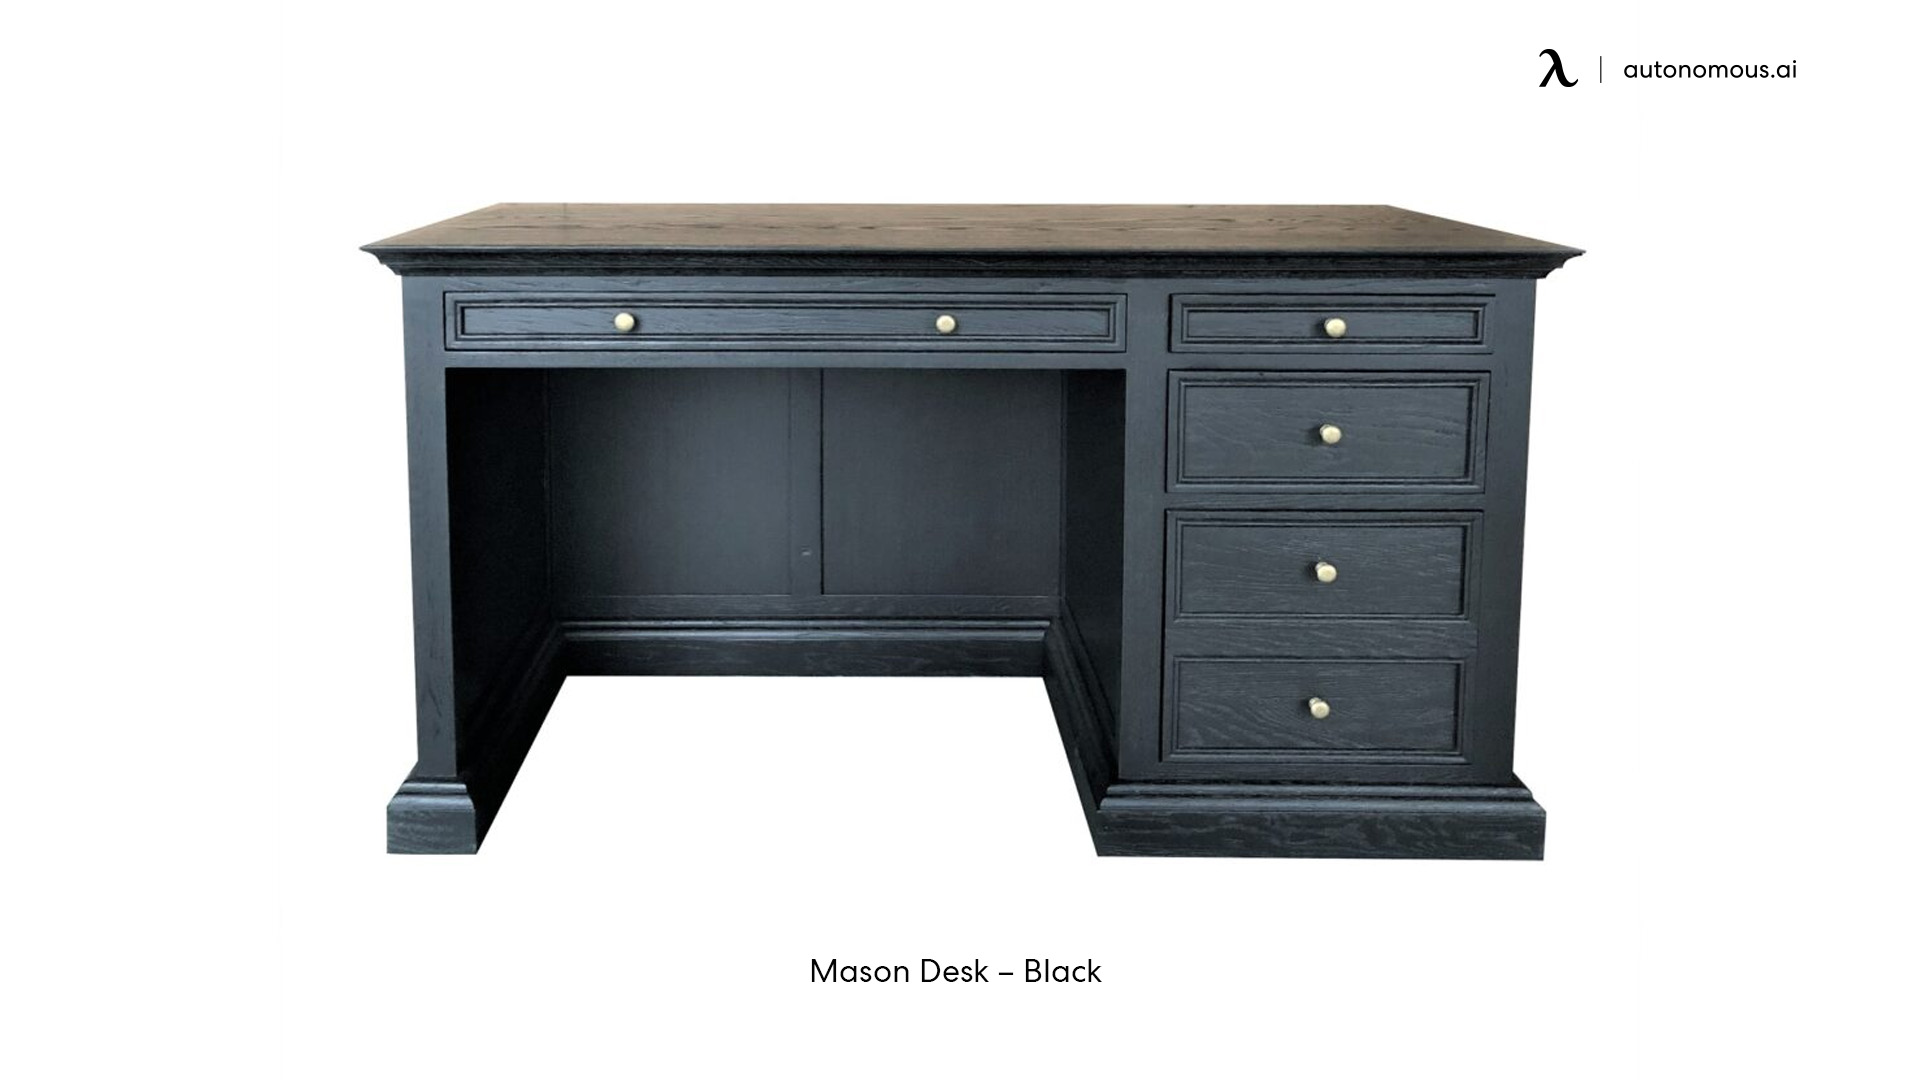 Mason Desk – black small desk